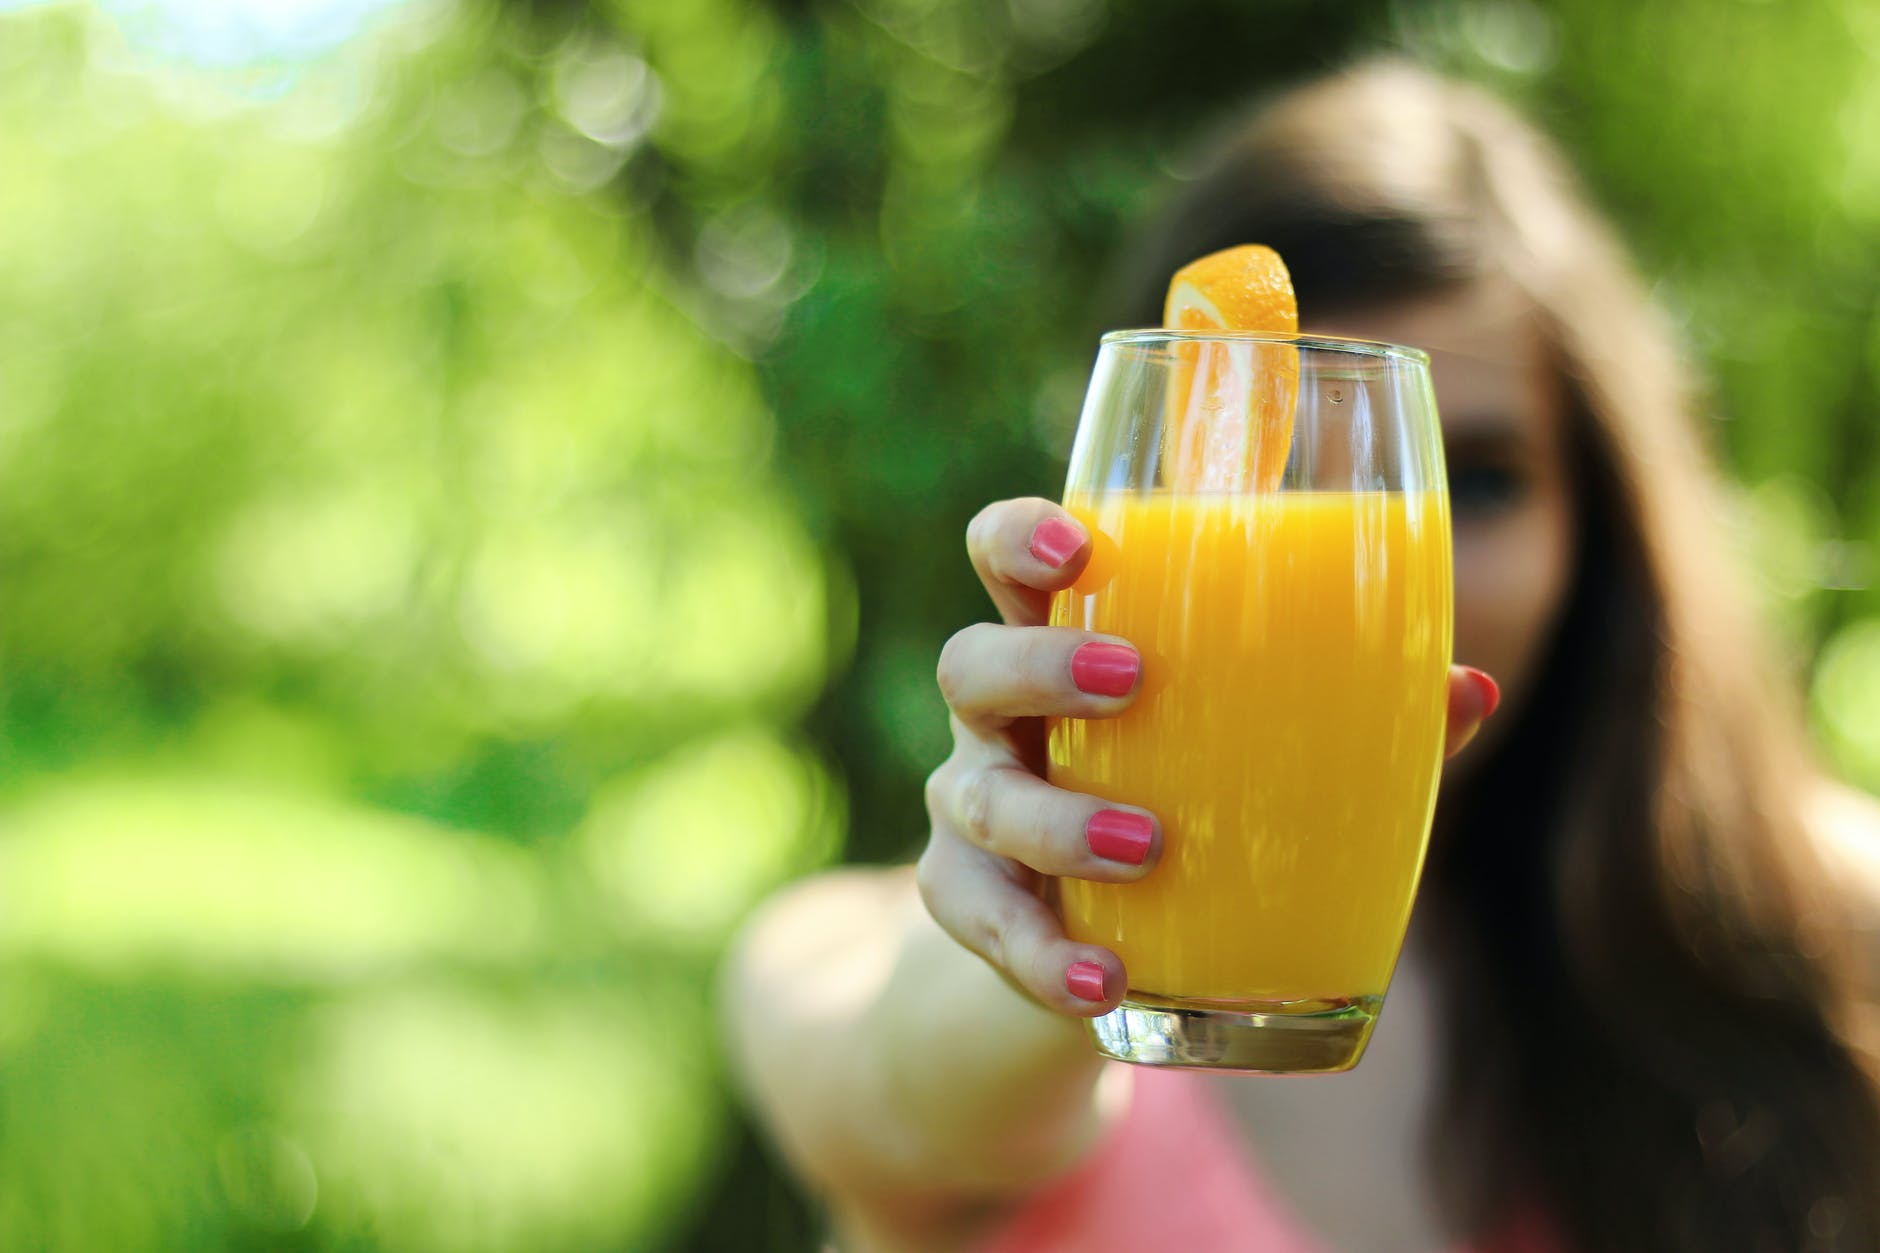 Descubra o que é mais saudável: comer a laranja ou beber o seu suco